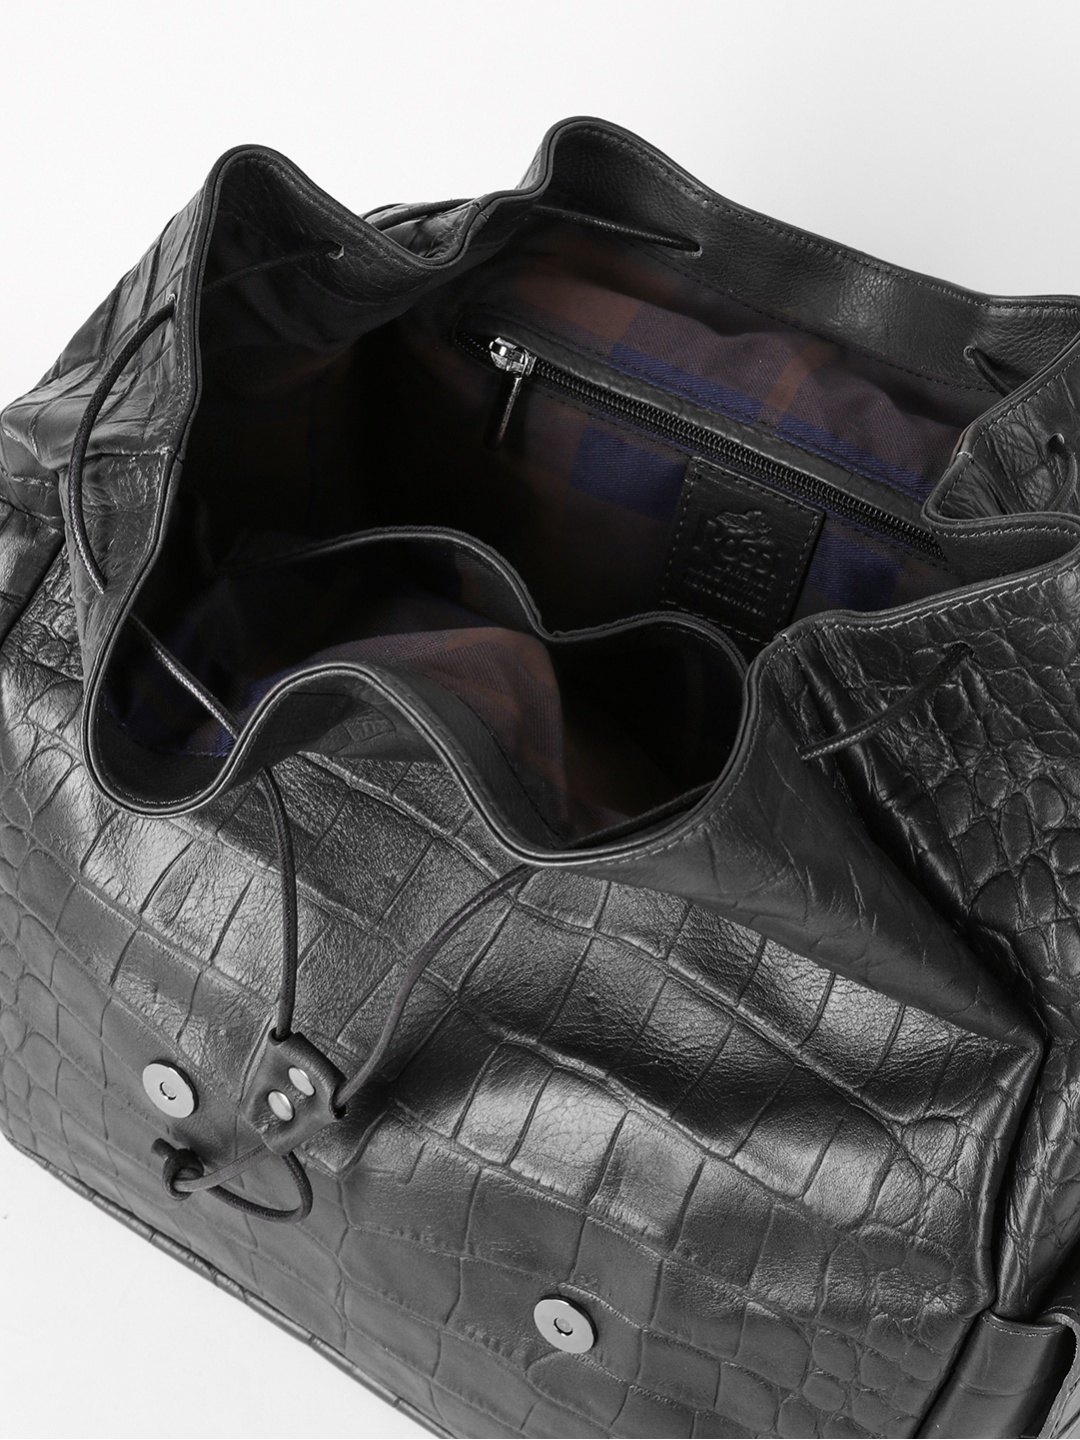 Фото Мужской кожаный рюкзак черного цвета Рюкзаки